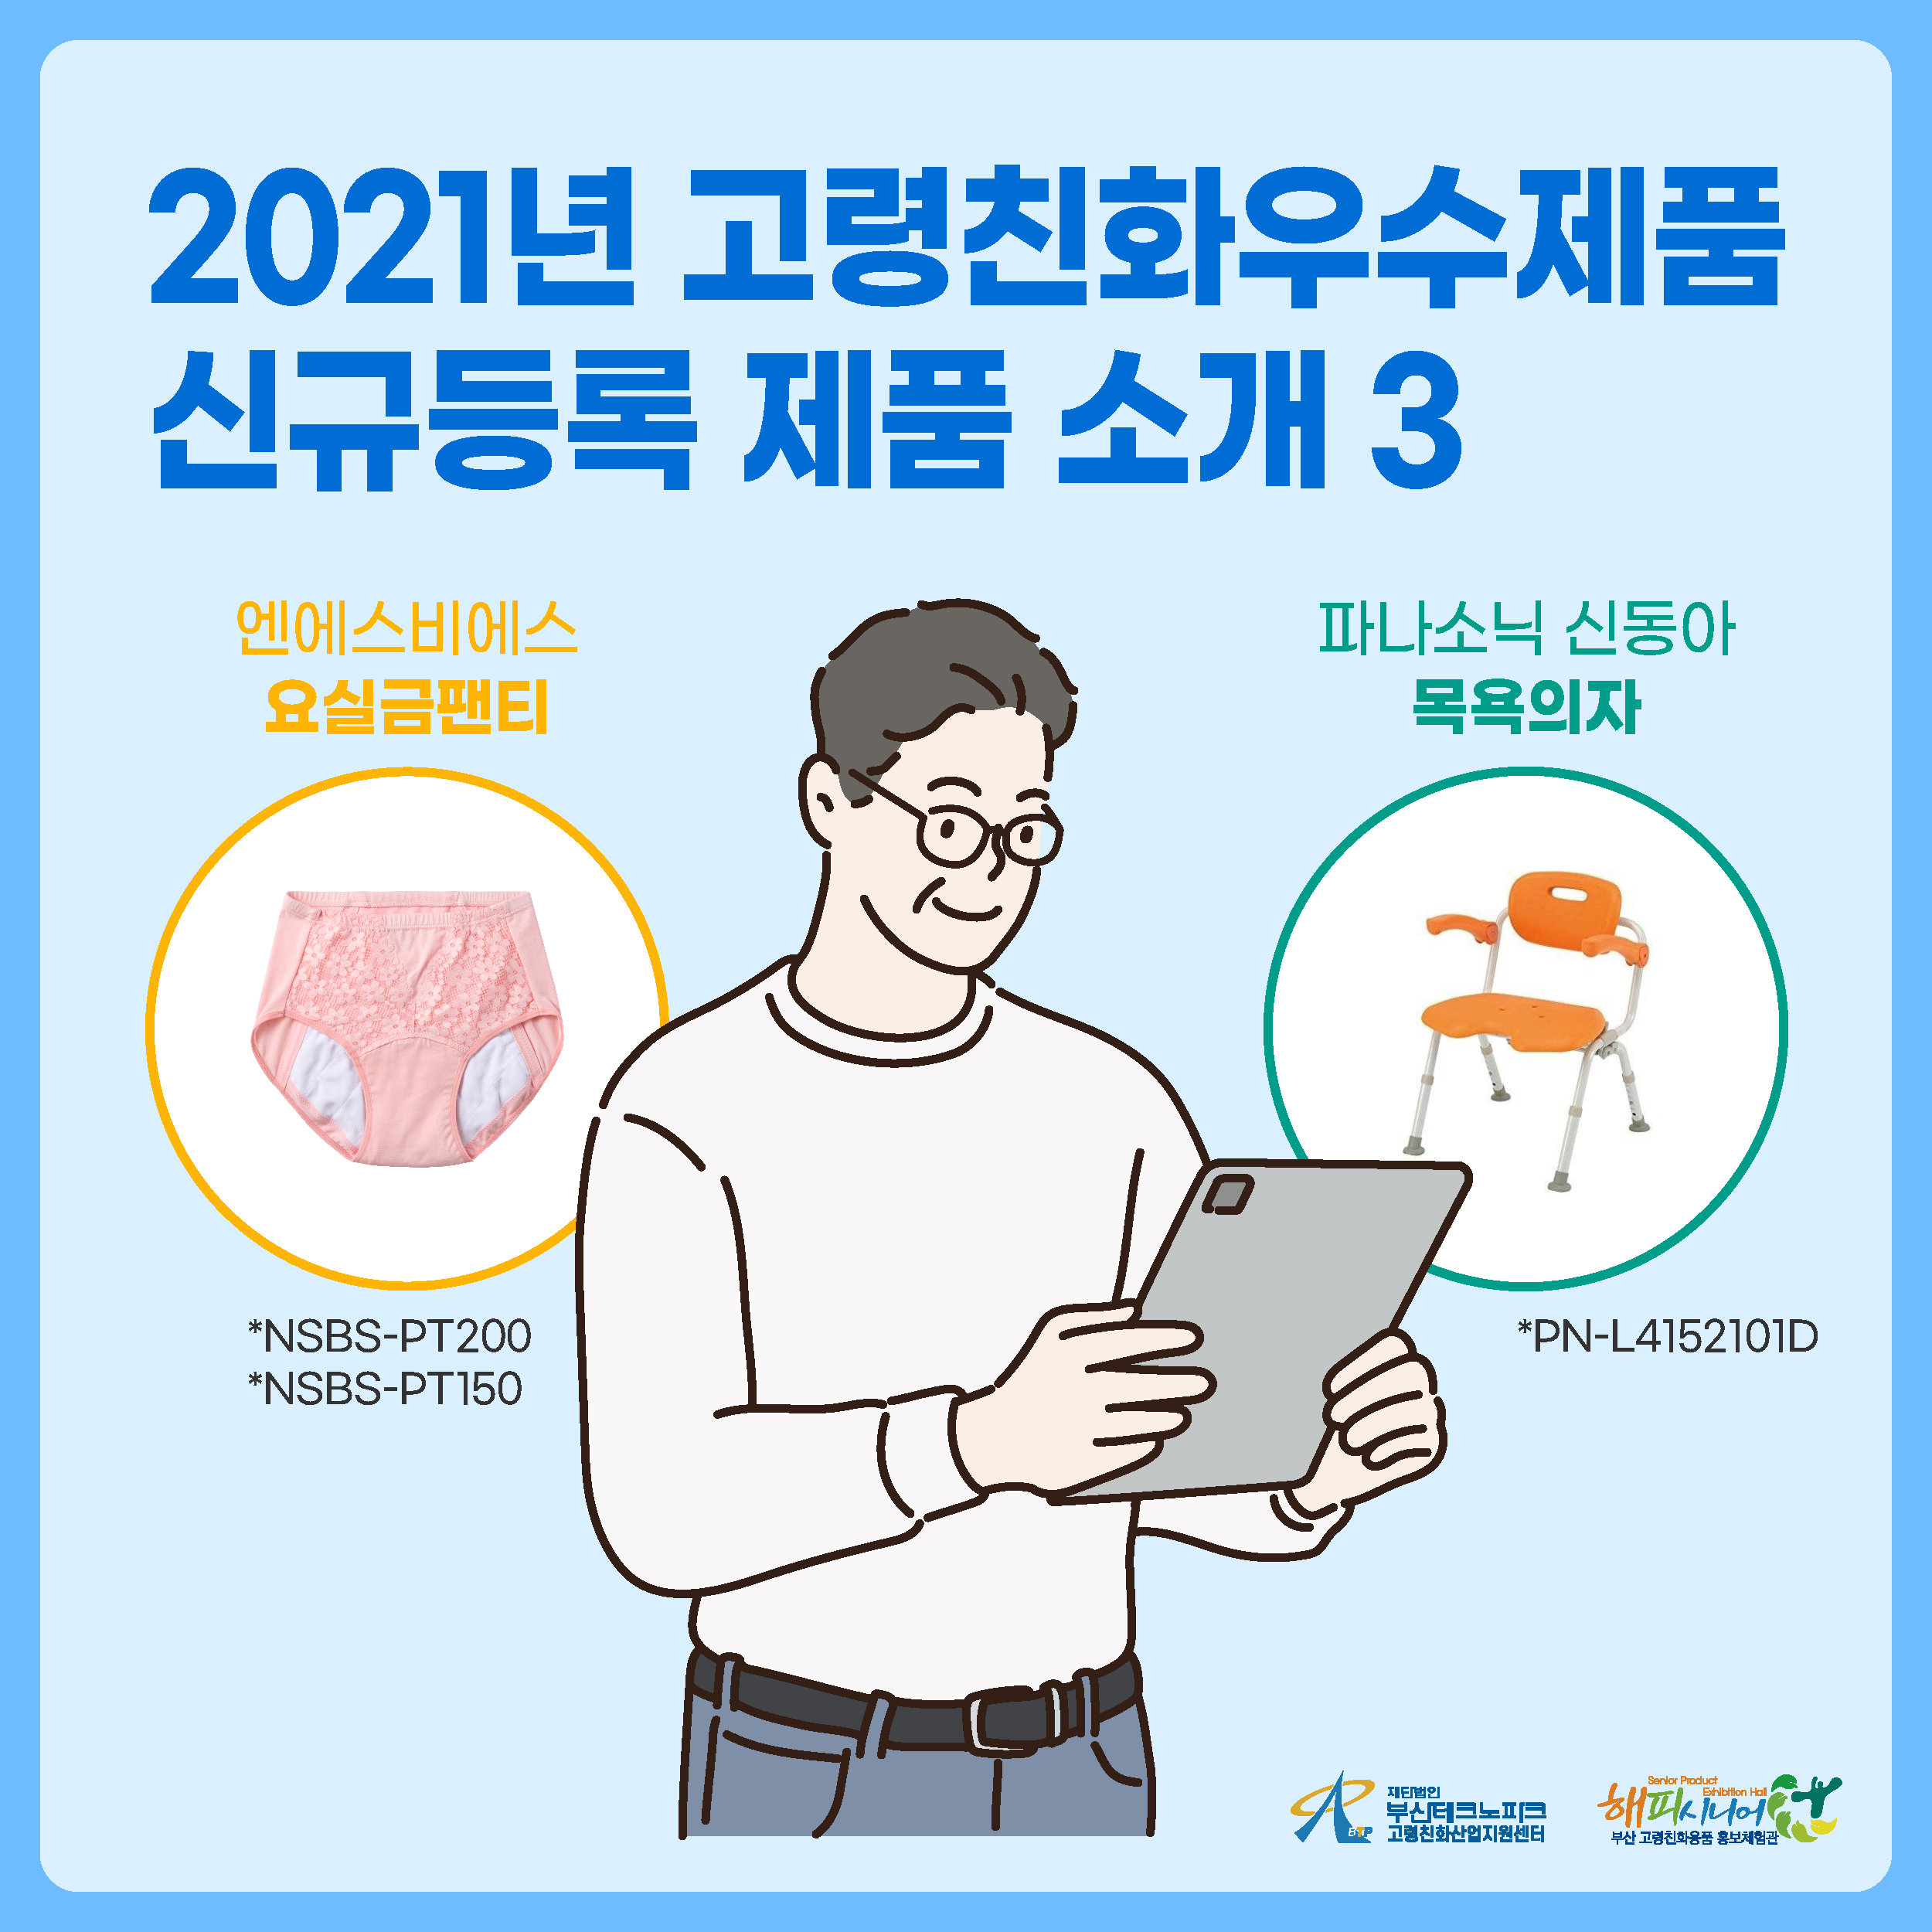 2021년 고령친화우수제품 신규등록 제품 소개 3